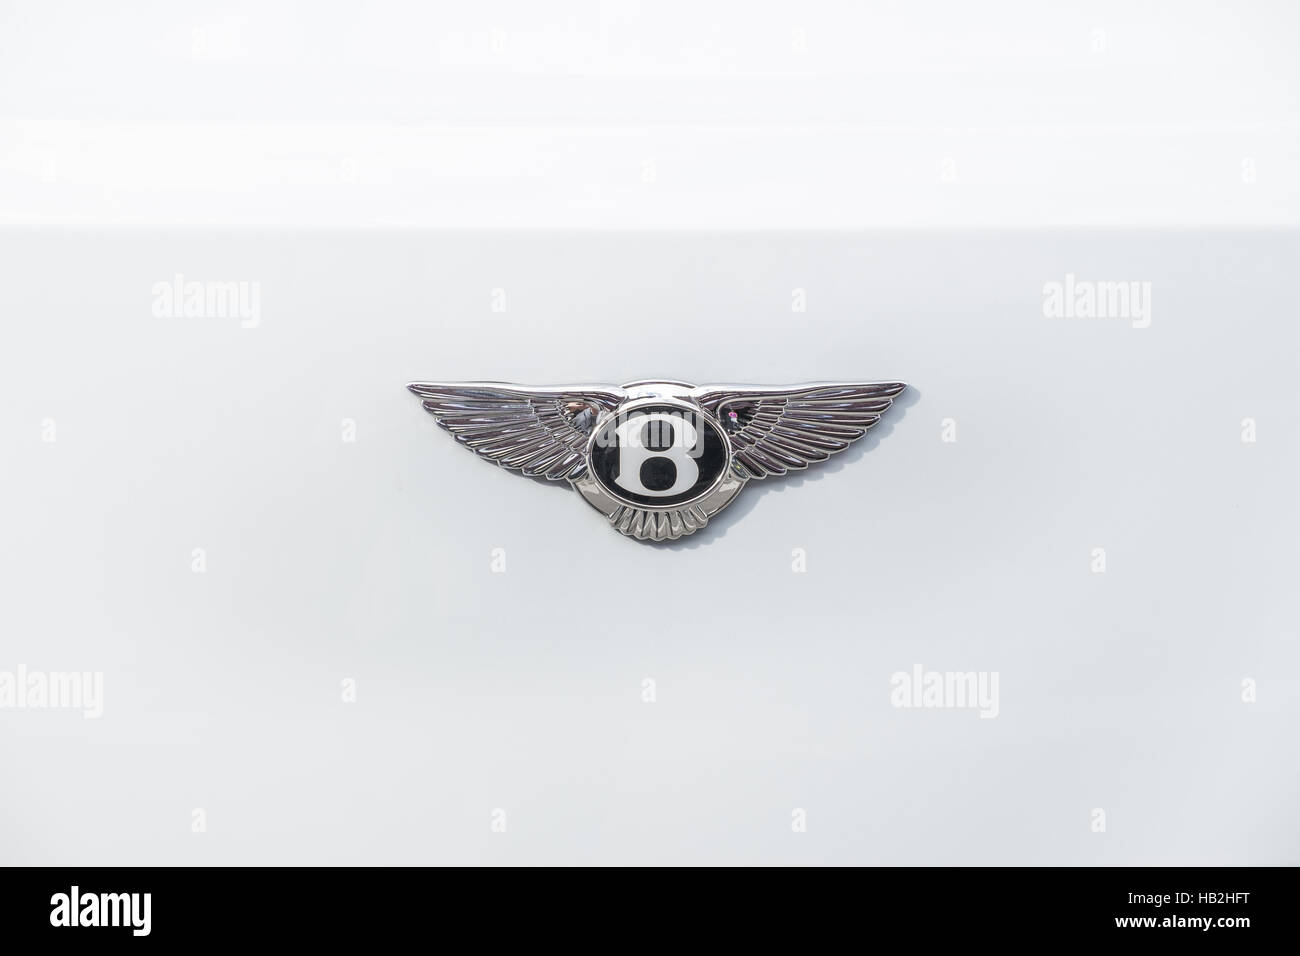 bentley logo on white background Stock Photo